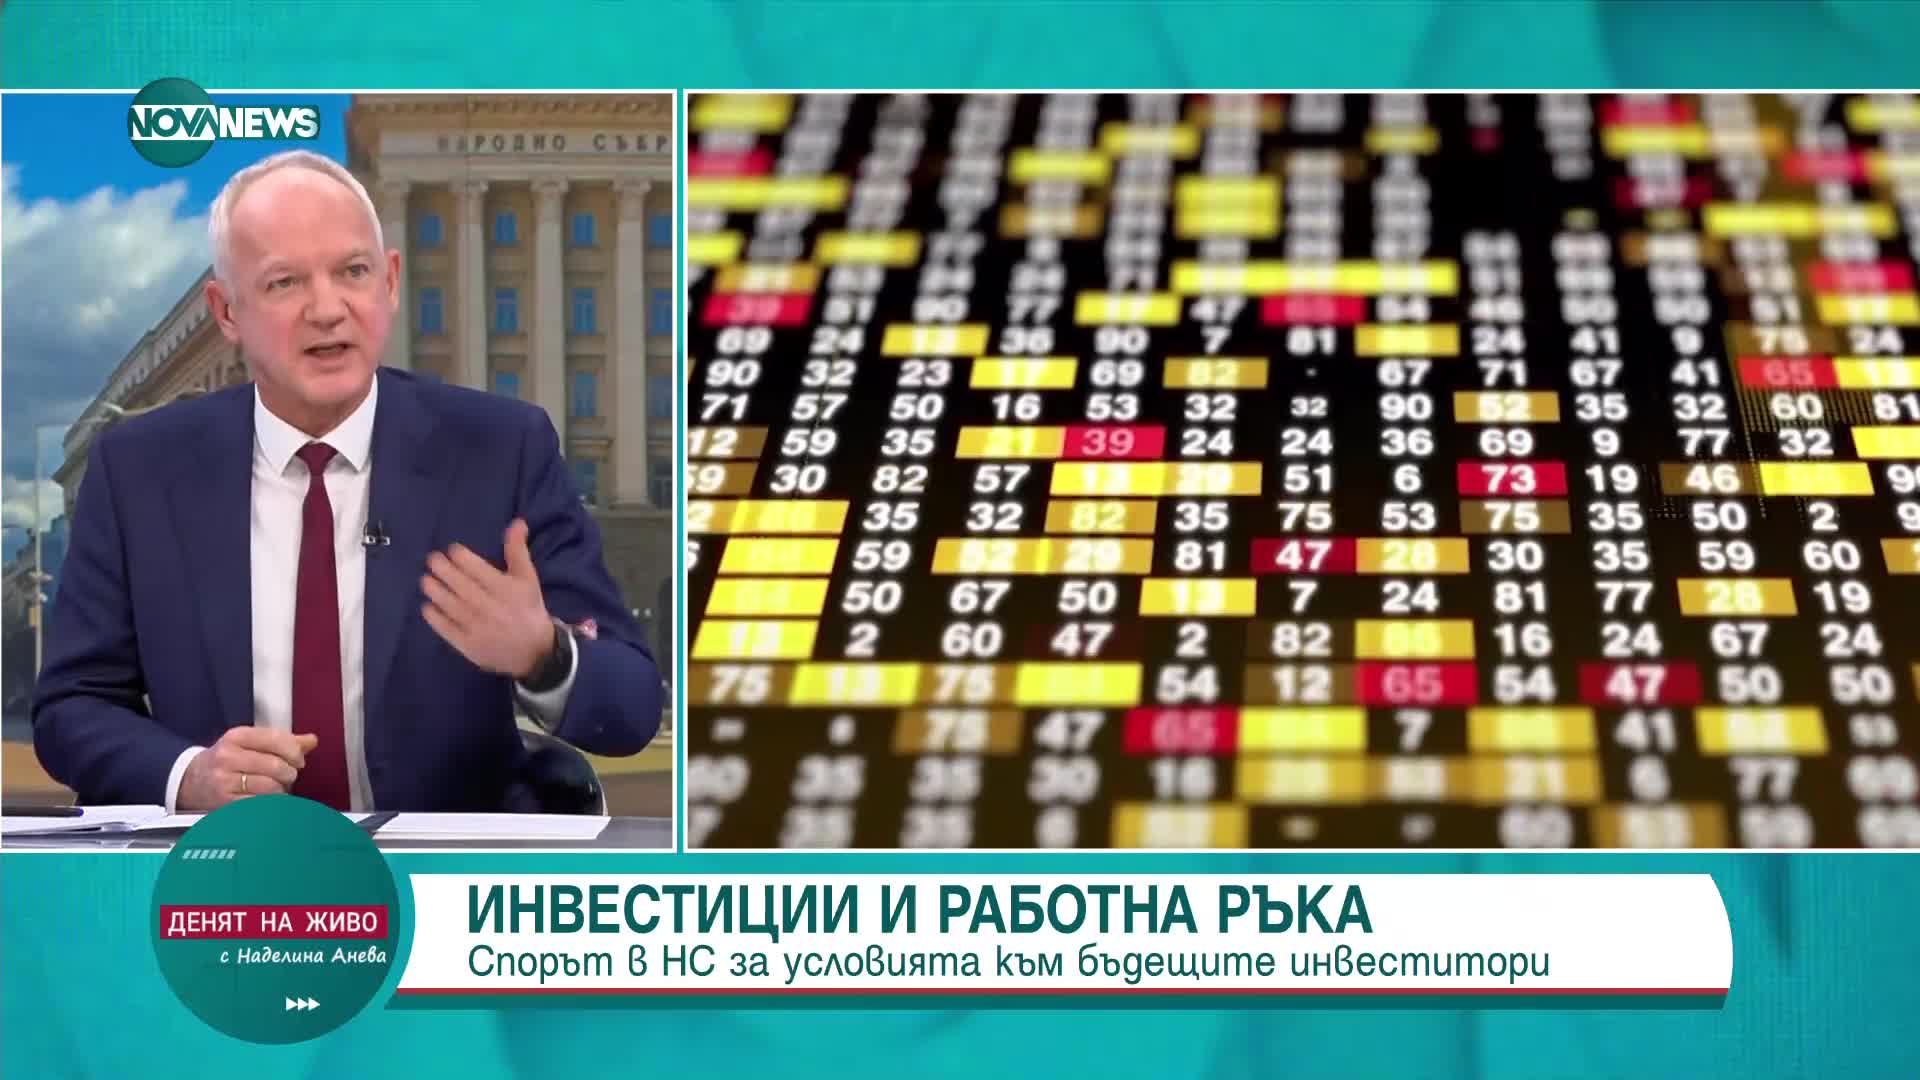 Васил Велев: По-честно е да има избори и следваща коалиция, която да управлява 4 г.